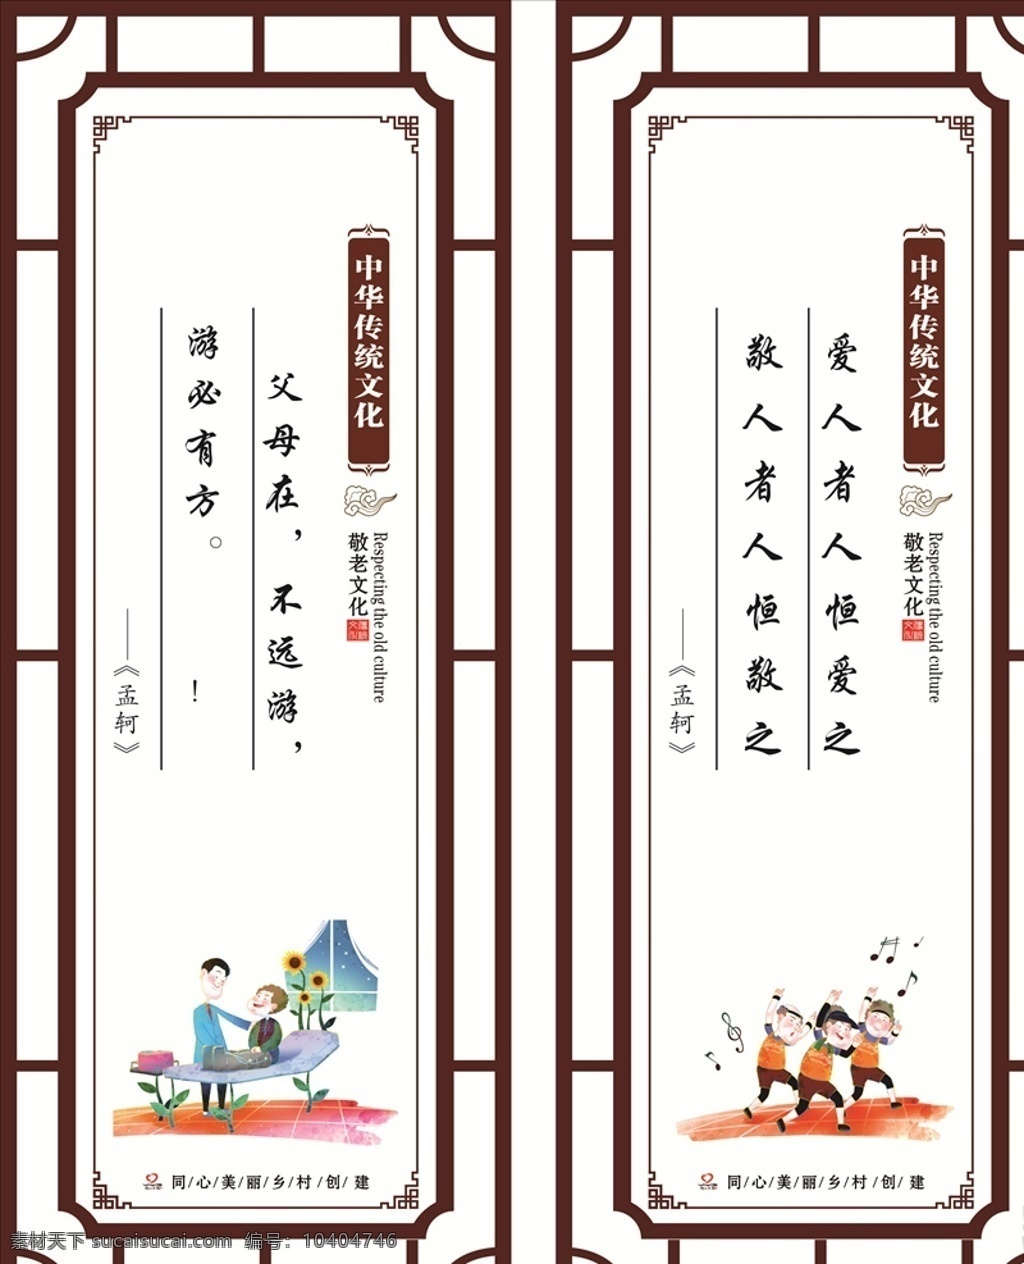 敬老院 论语 卡通人物 中国文化 统战文化 标志